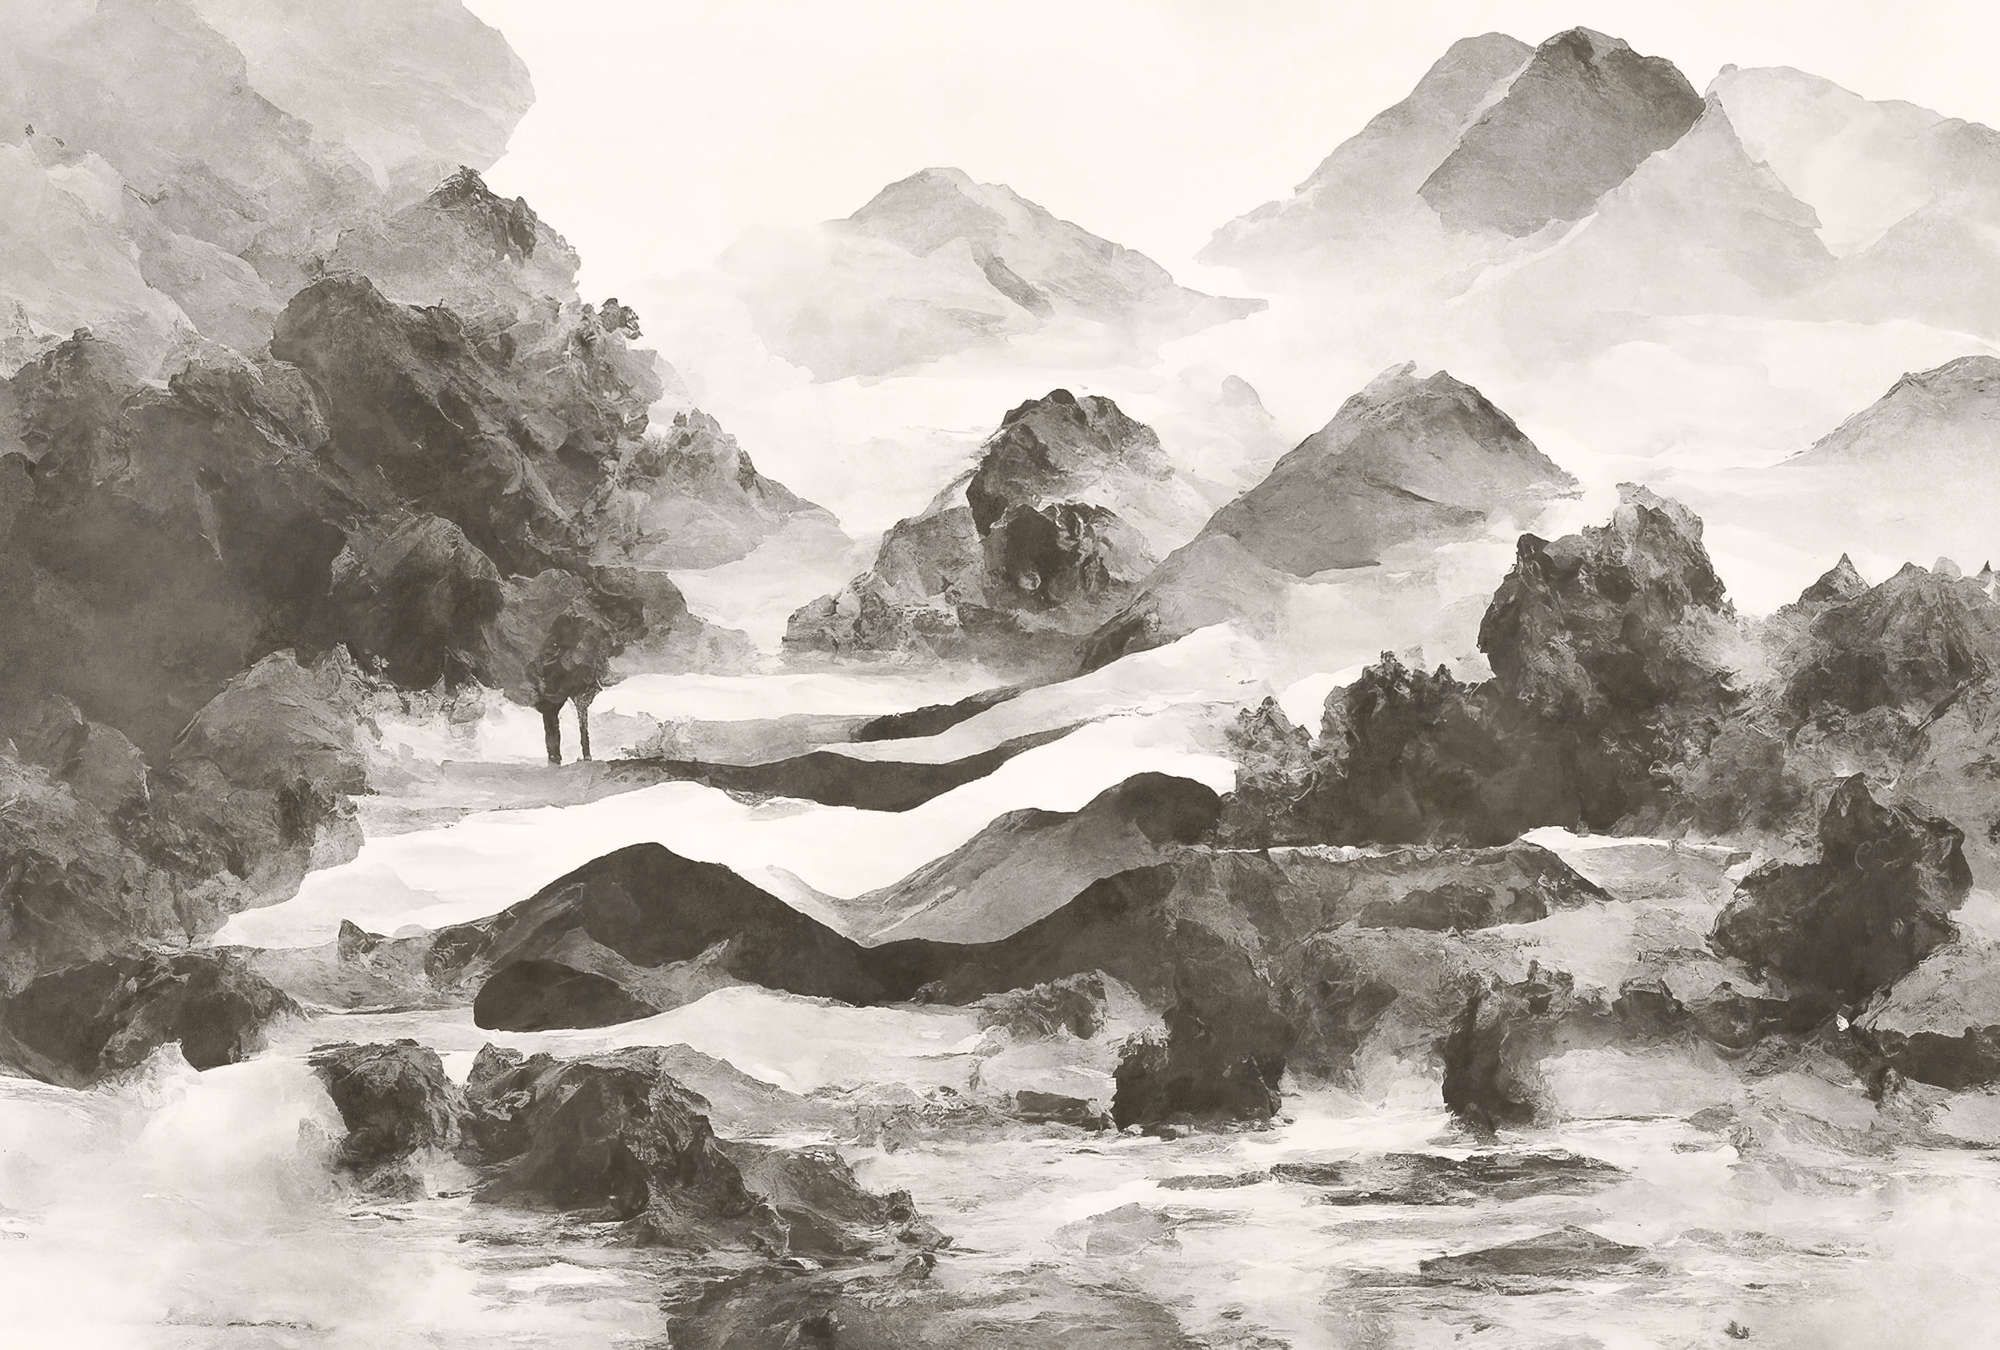             Digital behang »tinterra 1« - Landschap met bergen & mist - Grijs | Glad, licht glanzend premium vliesdoek
        